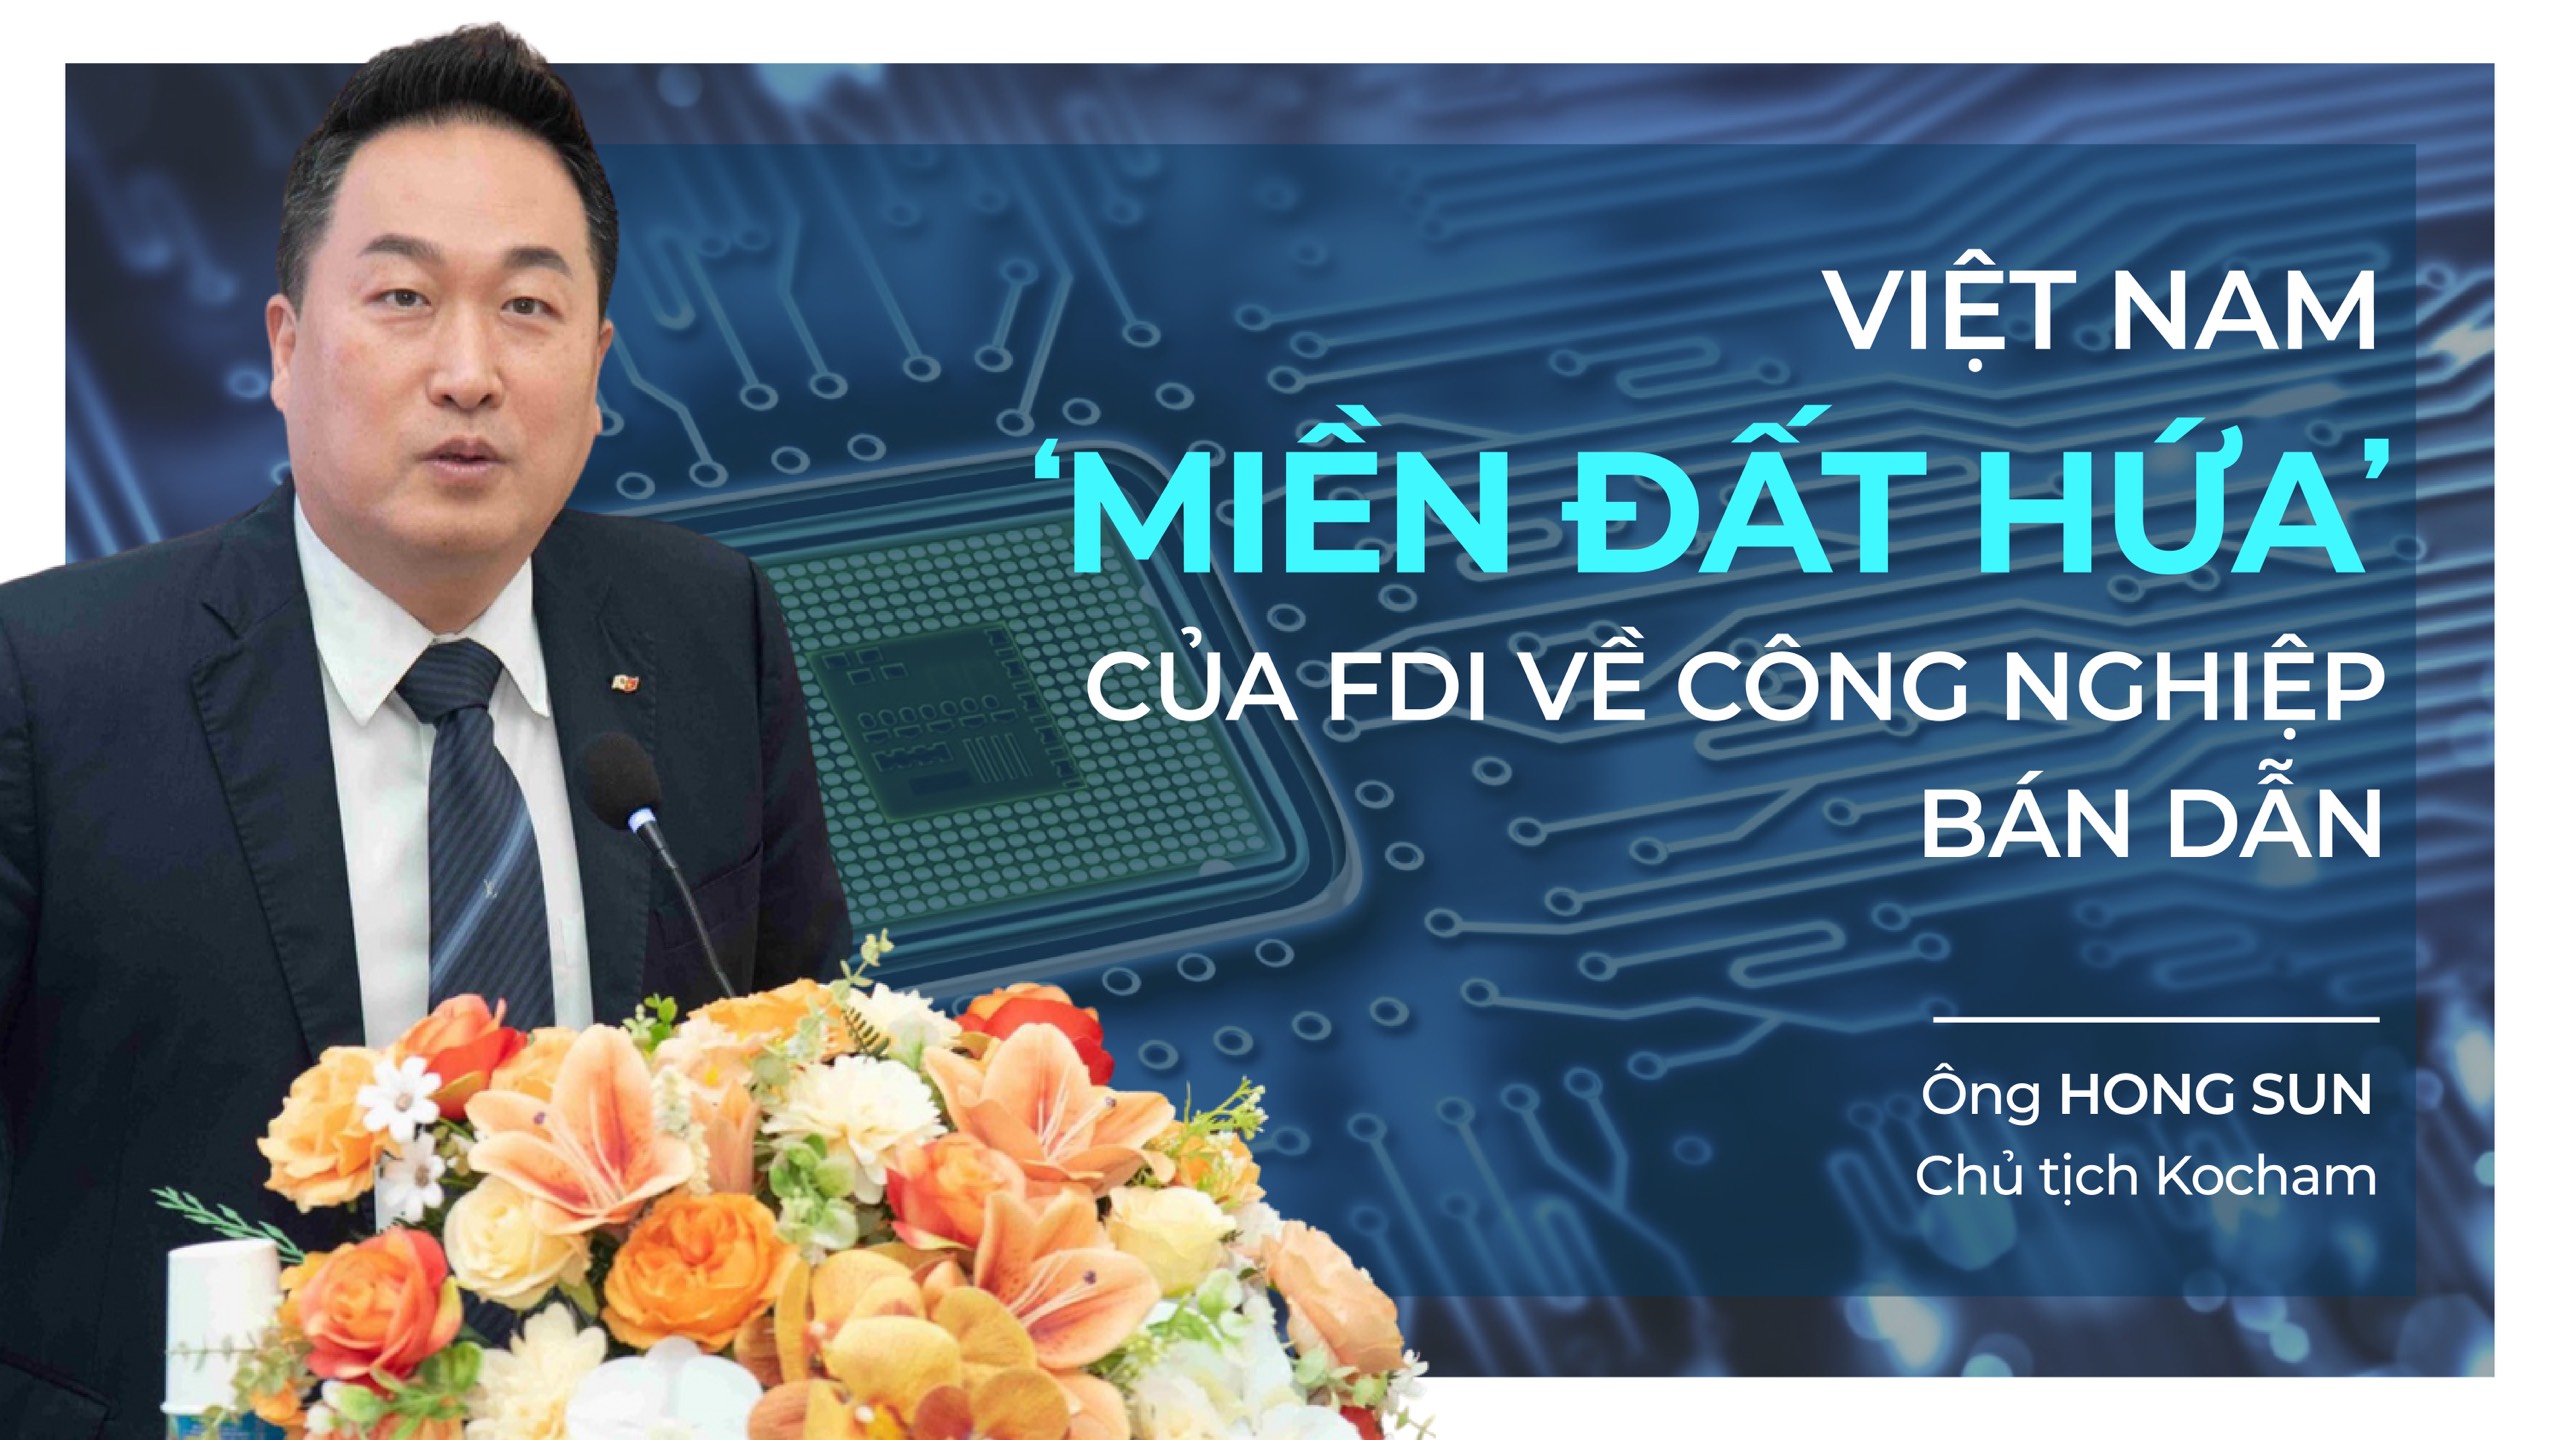 Chủ tịch Kocham: Việt Nam sẽ là 'miền đất hứa' của FDI về công nghiệp bán dẫn